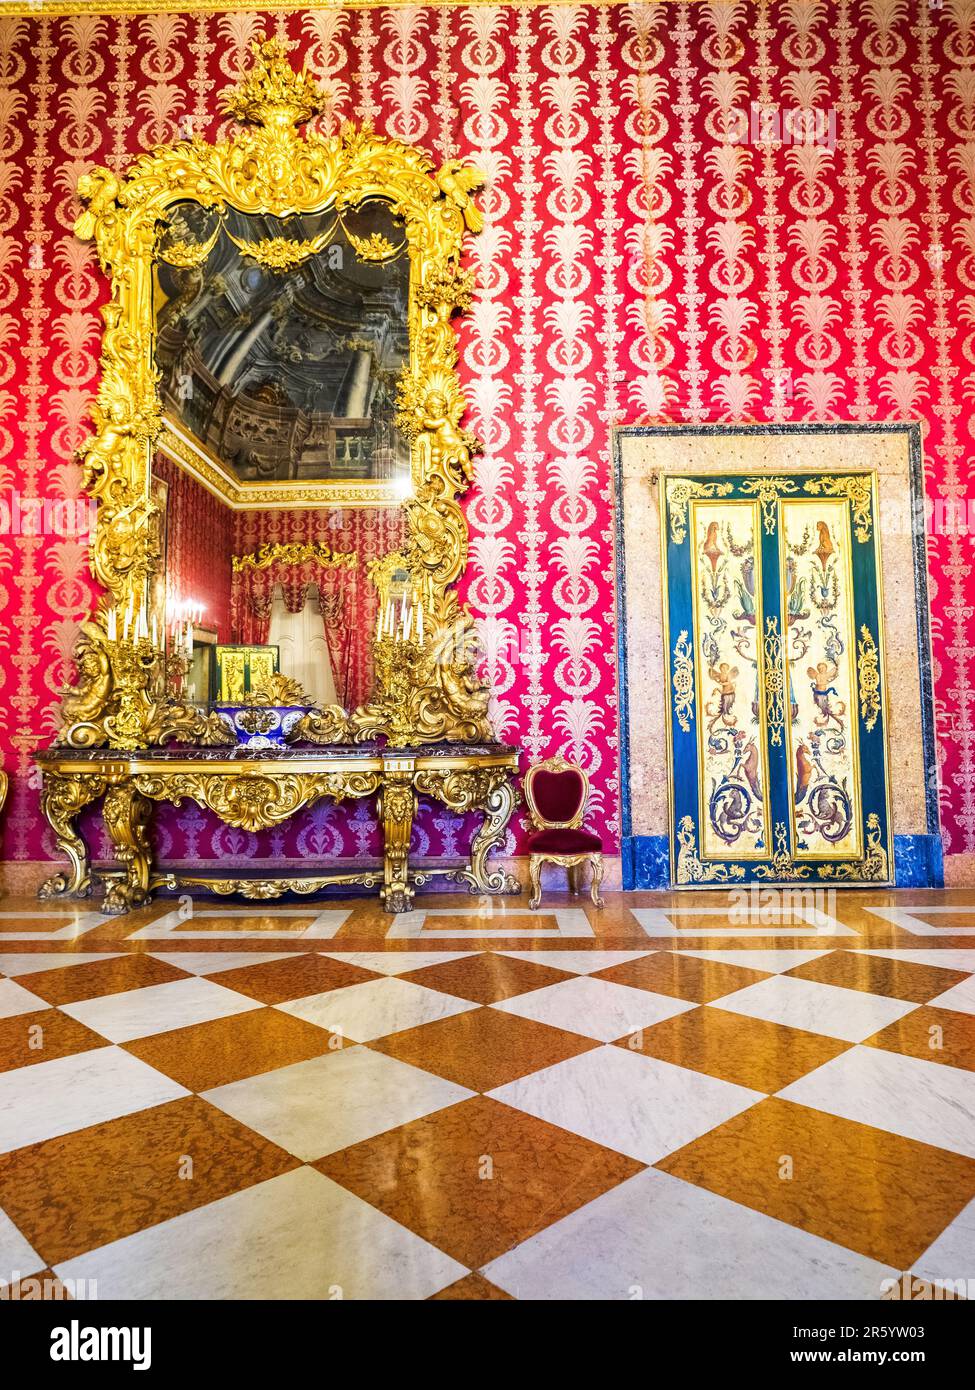 Mobili in stile neo-barocco (2nd metà del 19th ° secolo durante il periodo Savoia) nel primo anticamera (salone diplomatico) nel Palazzo reale di Napoli che nel 1734 divenne la residenza reale dei Borboni - Napoli, Italia Foto Stock